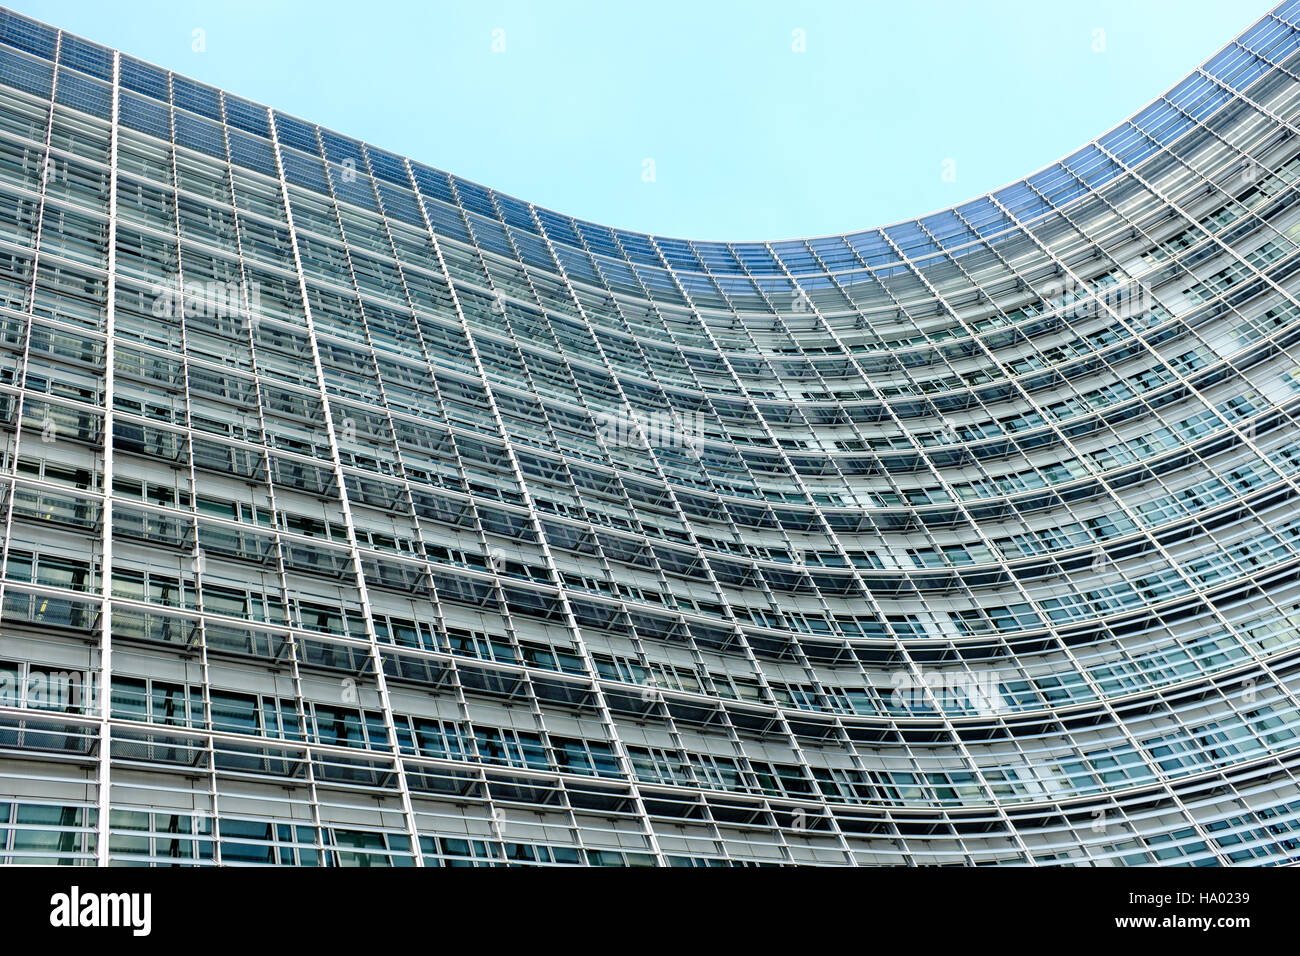 Das Berlaymont-Gebäude der Sitz der Europäischen Kommission, Brüssel, Belgien Stockfoto